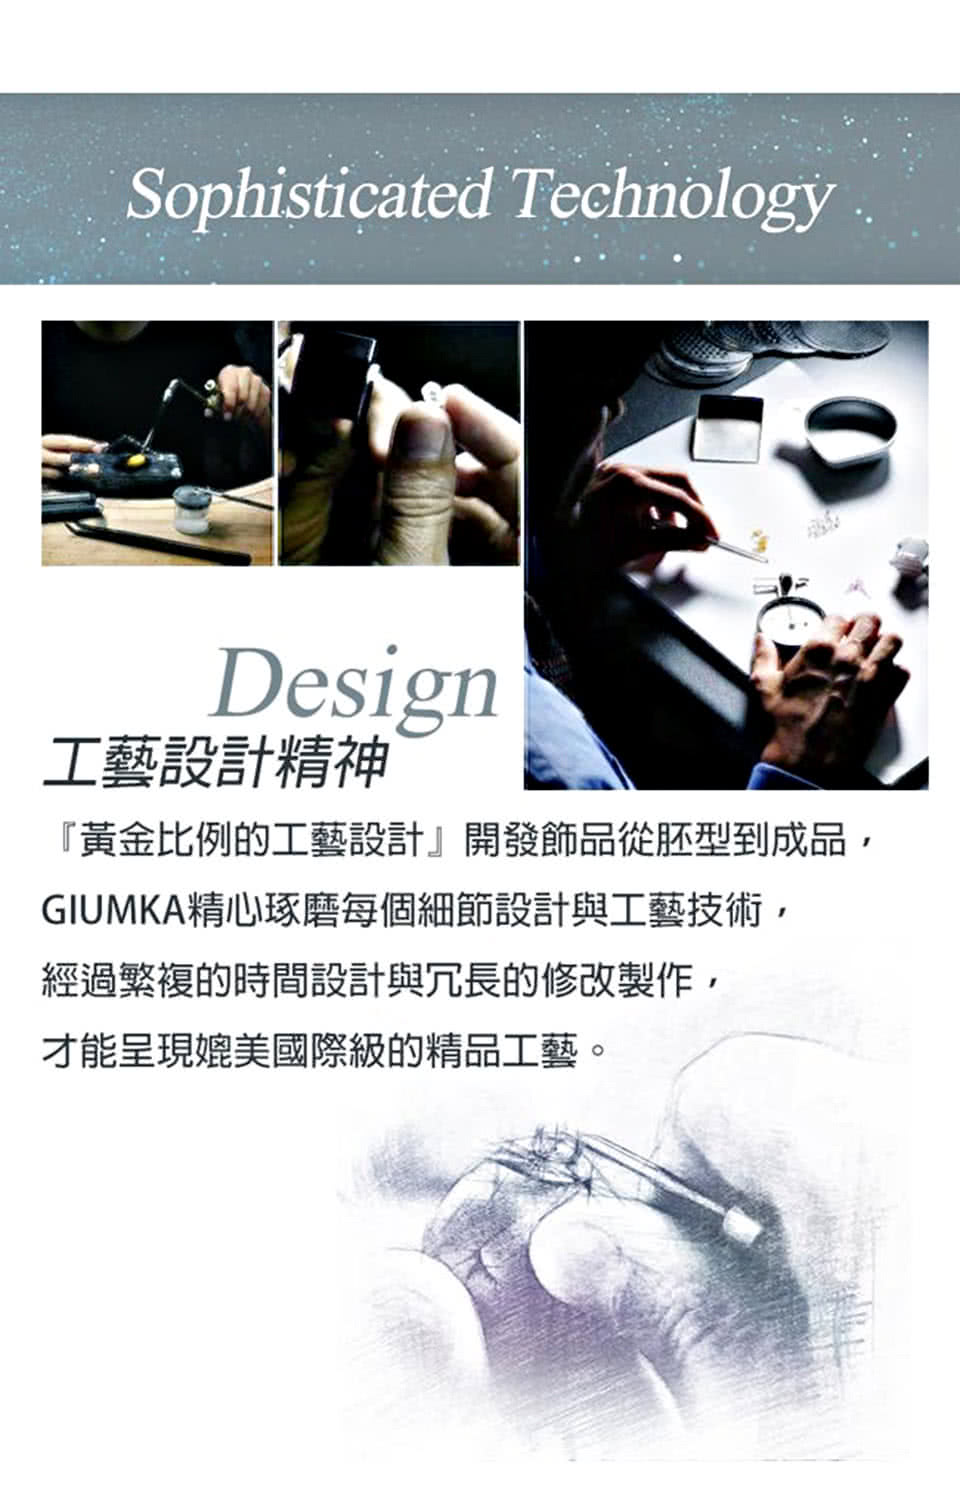 GIUMKAdesign.jpg?t=1530751322158